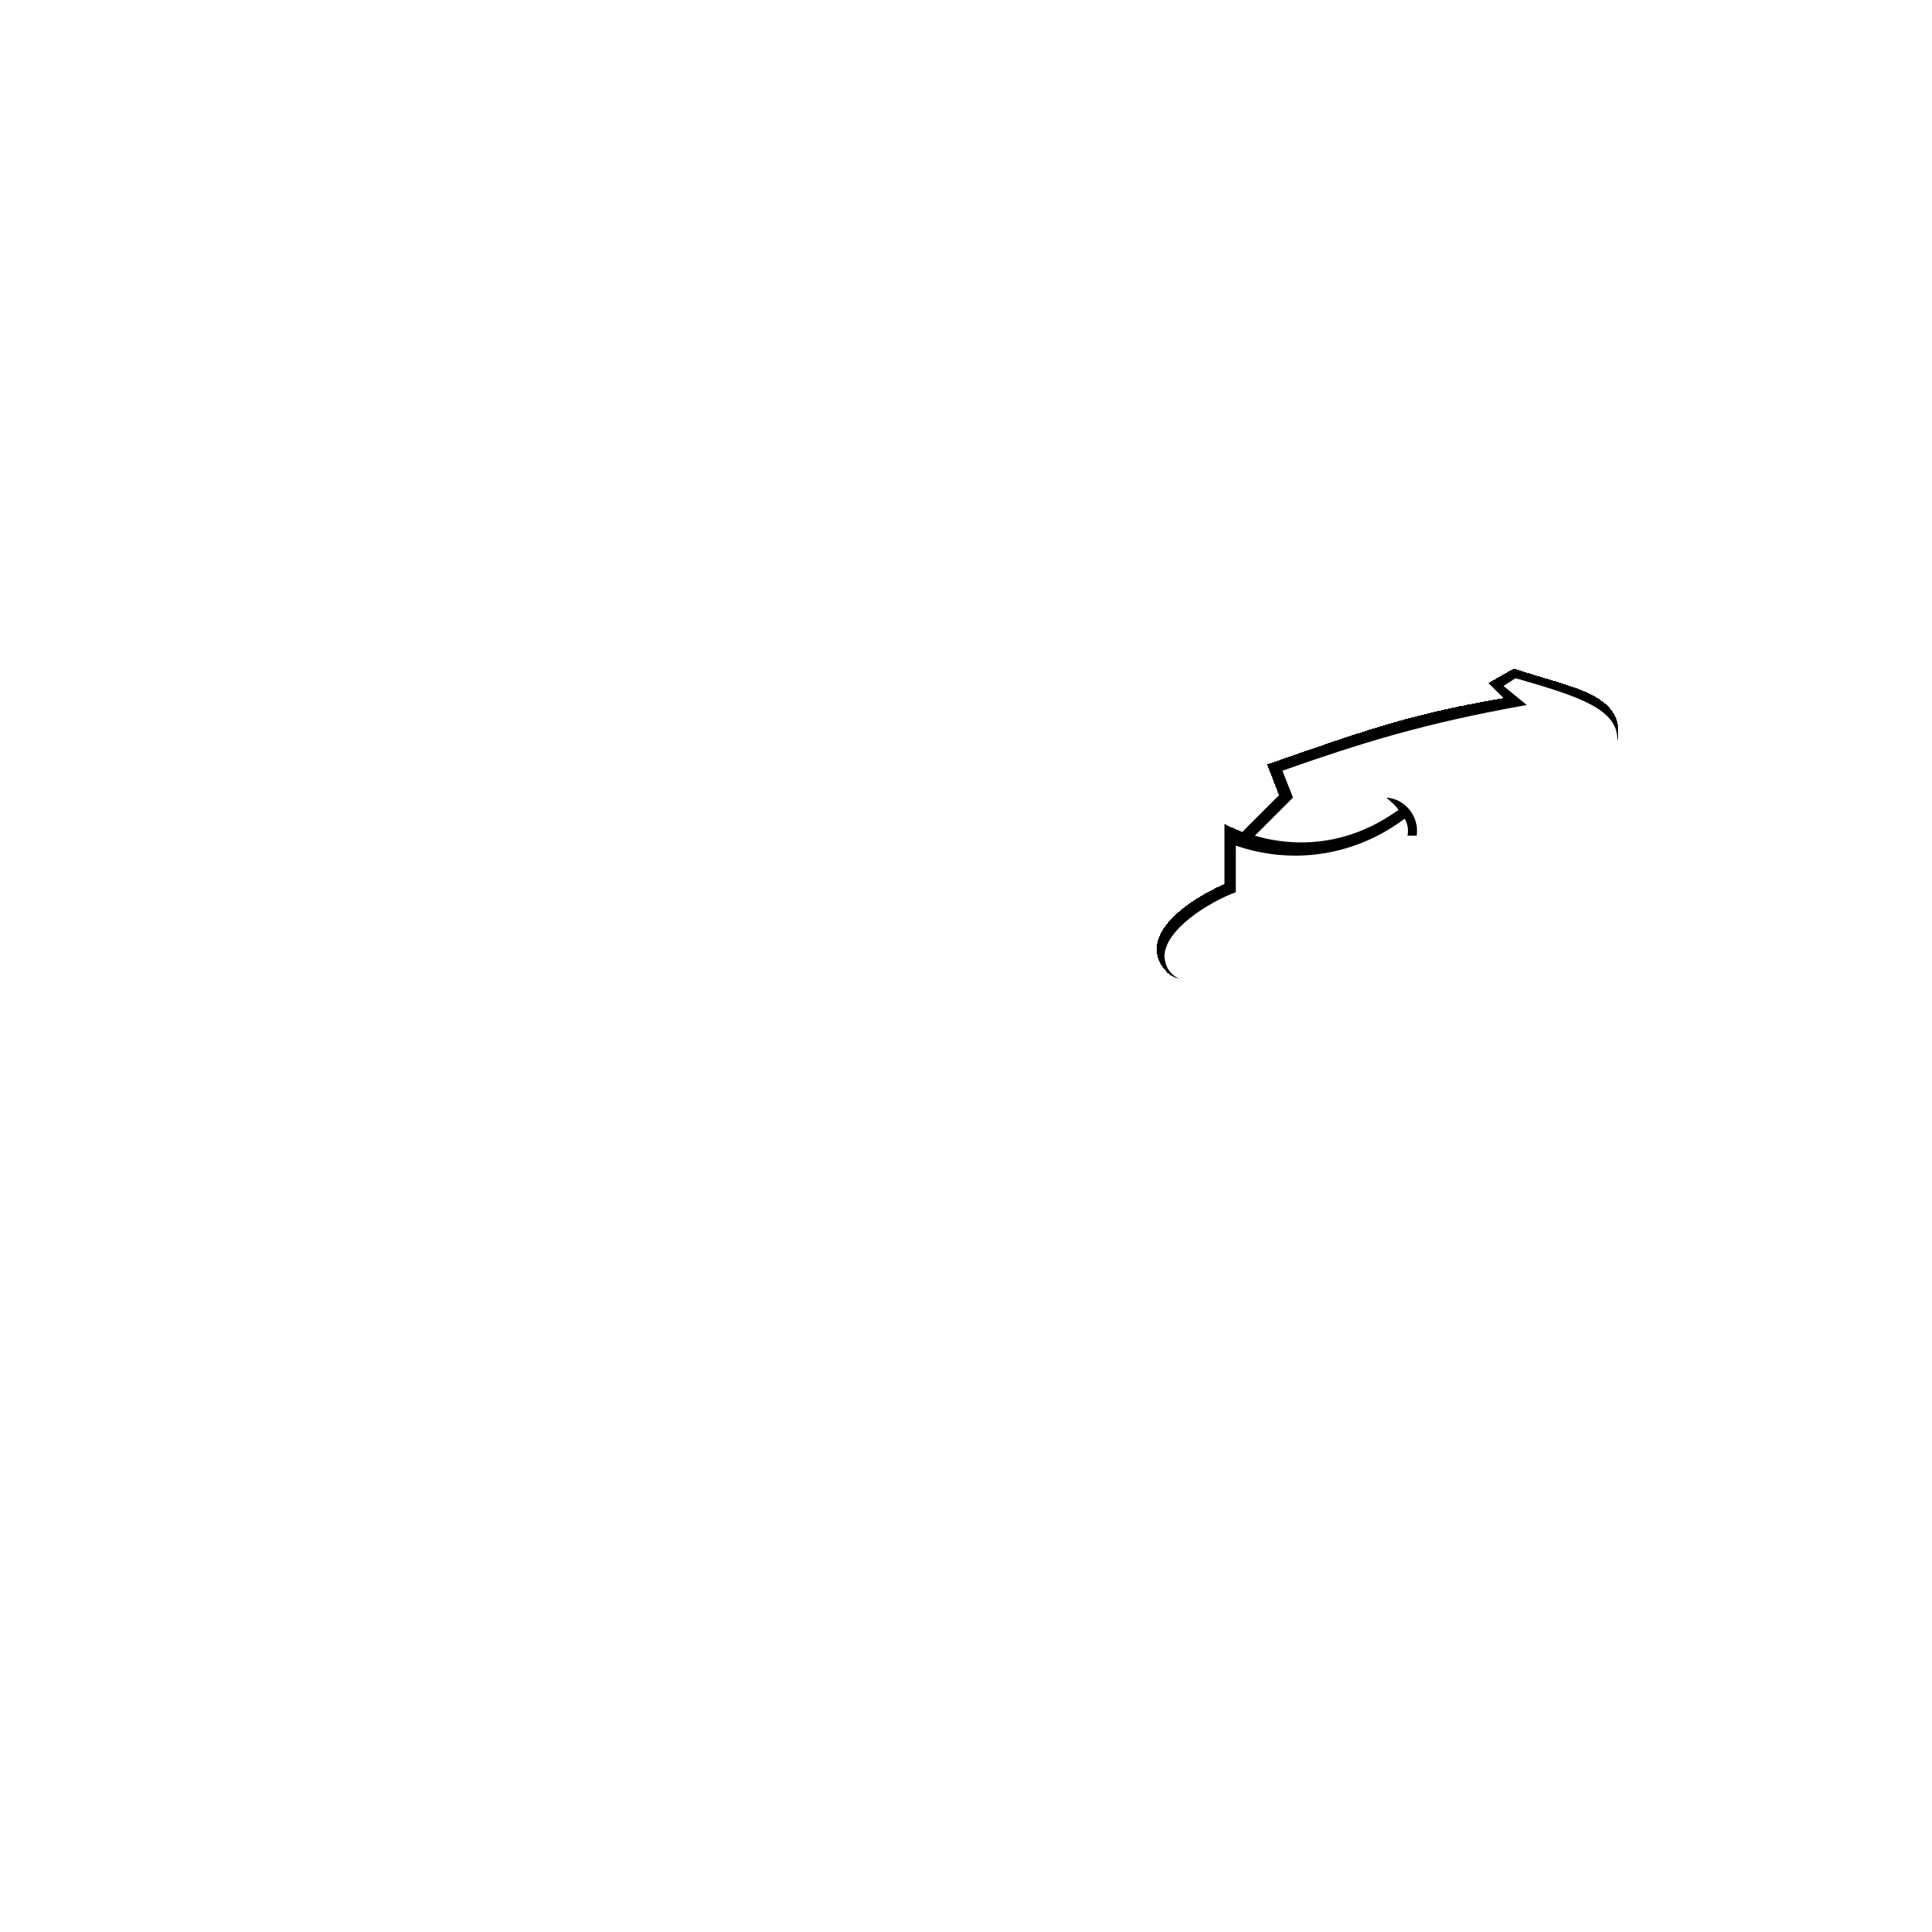 Alibaba.com Logo - Alibaba com 2 Logo PNG Transparent & SVG Vector - Freebie Supply